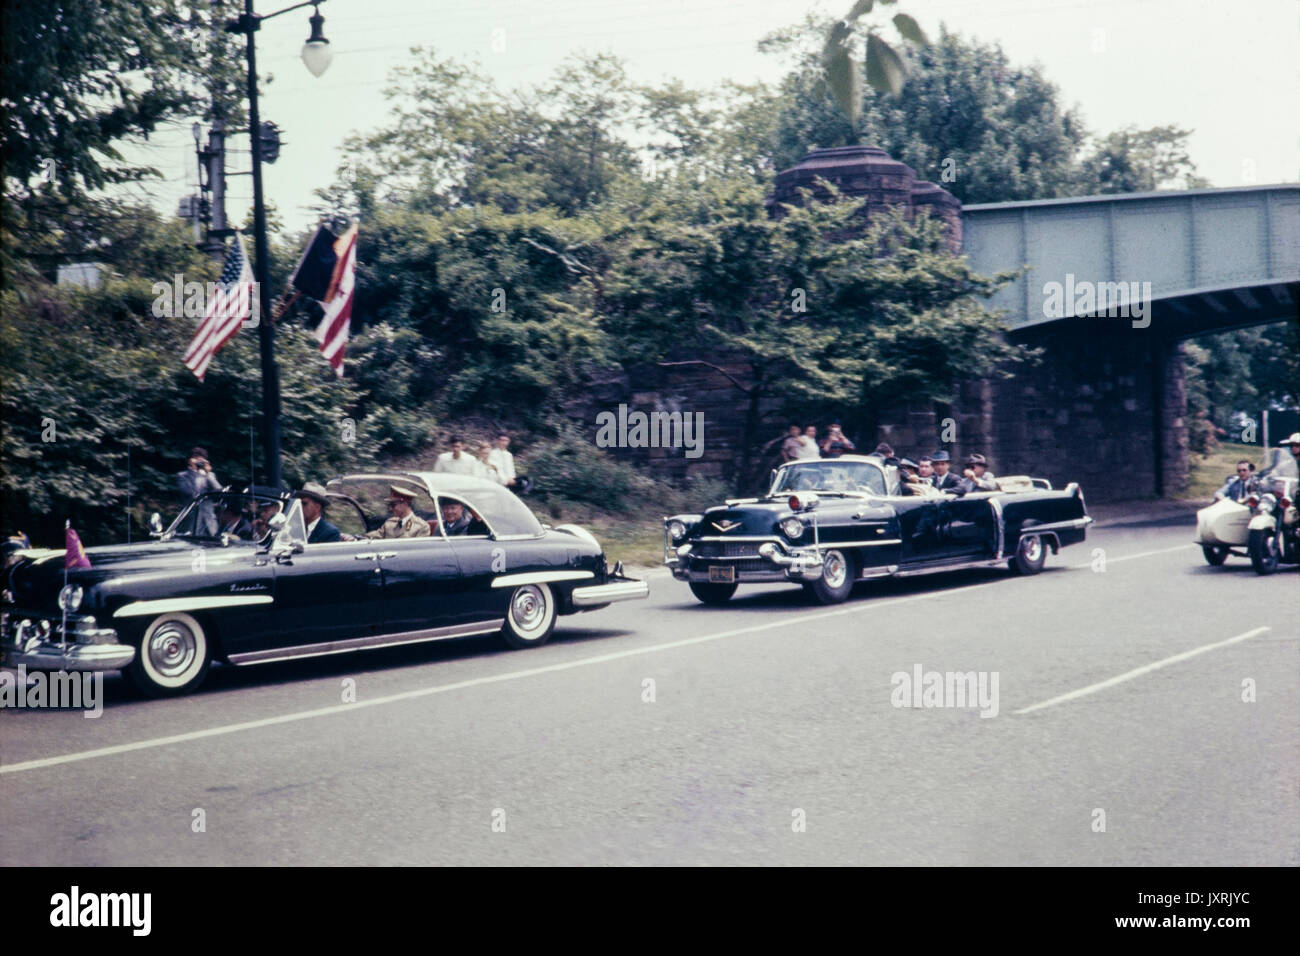 Cortège de l'exécution Le Roi Baudouin de Belgique à travers les rues de New York en mai 1959. Image montre les voitures et la mode de la période. Banque D'Images